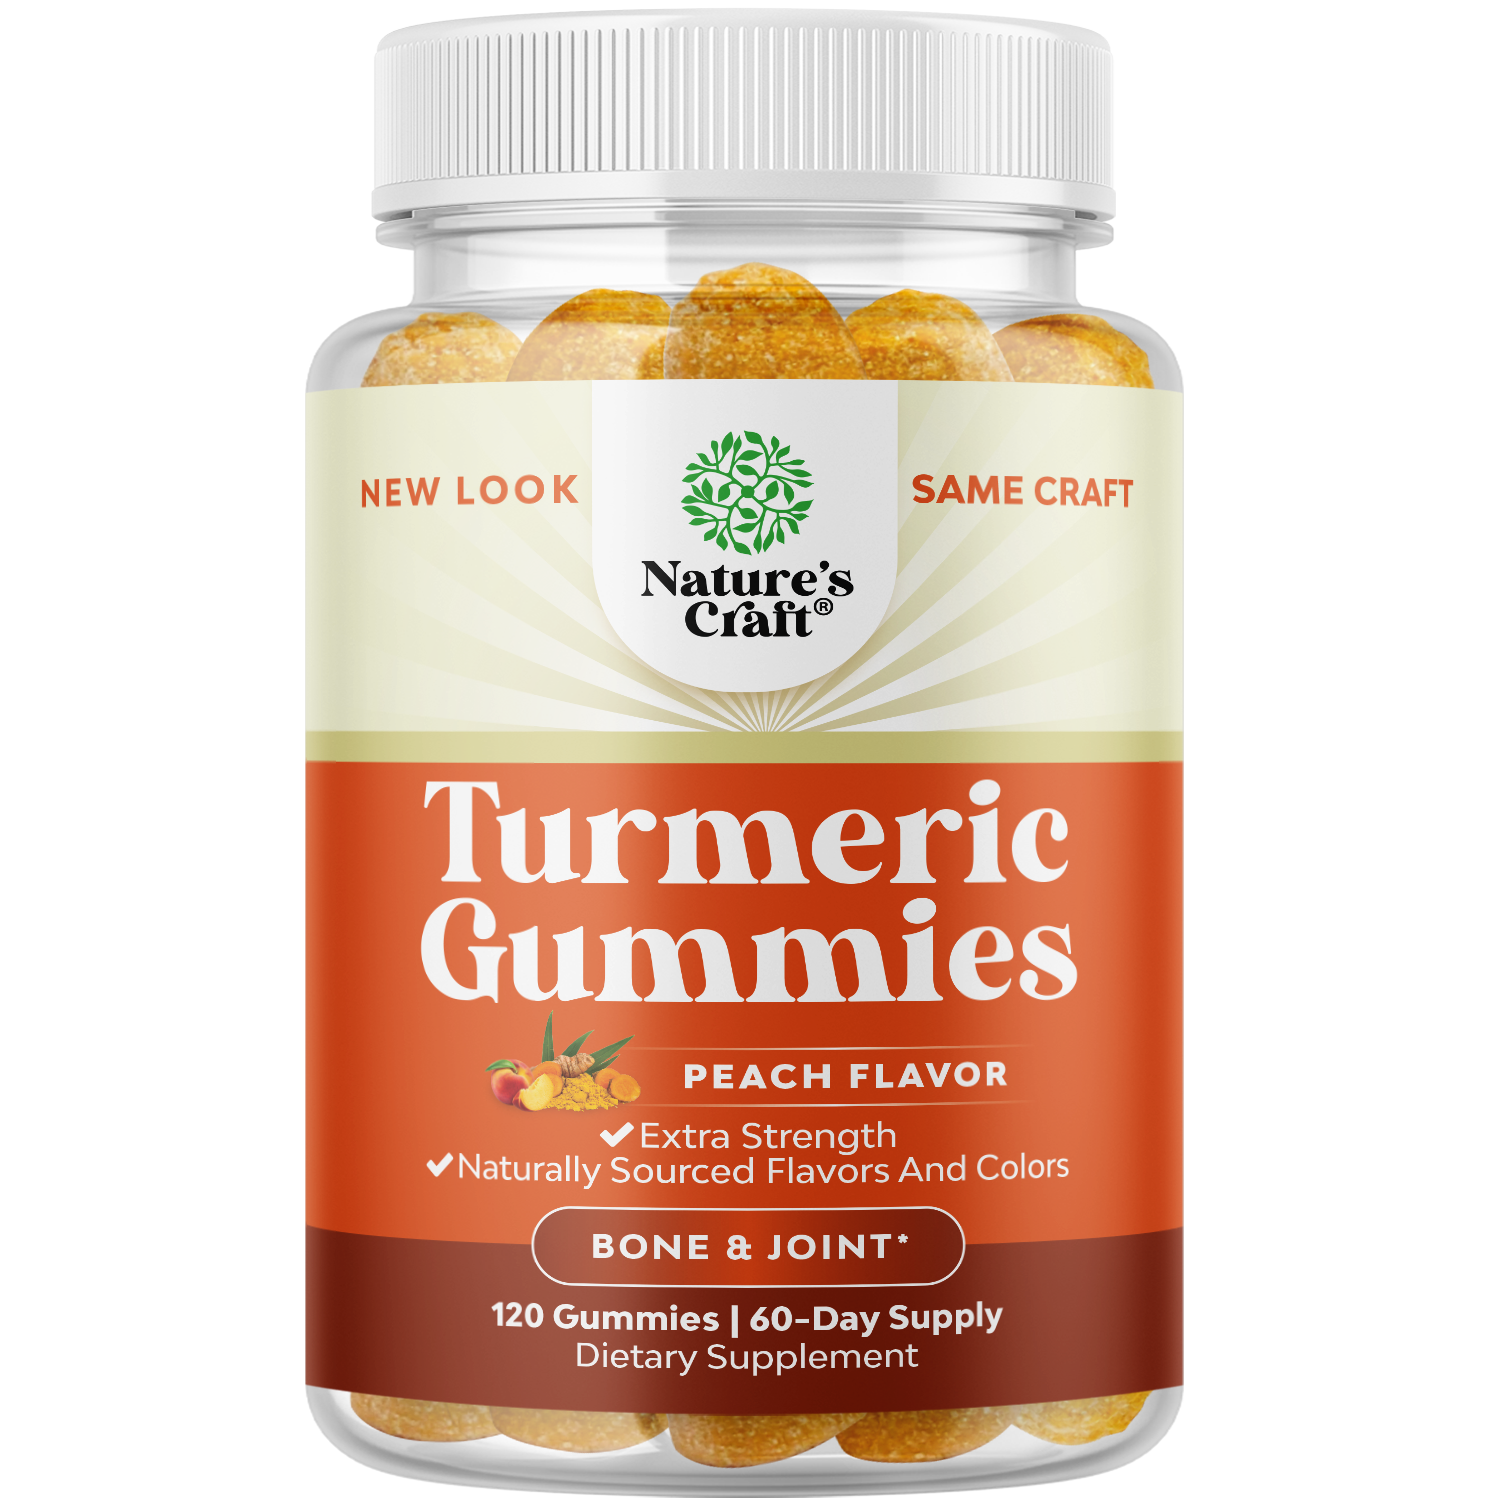 Turmeric Gummies- Peach Flavor